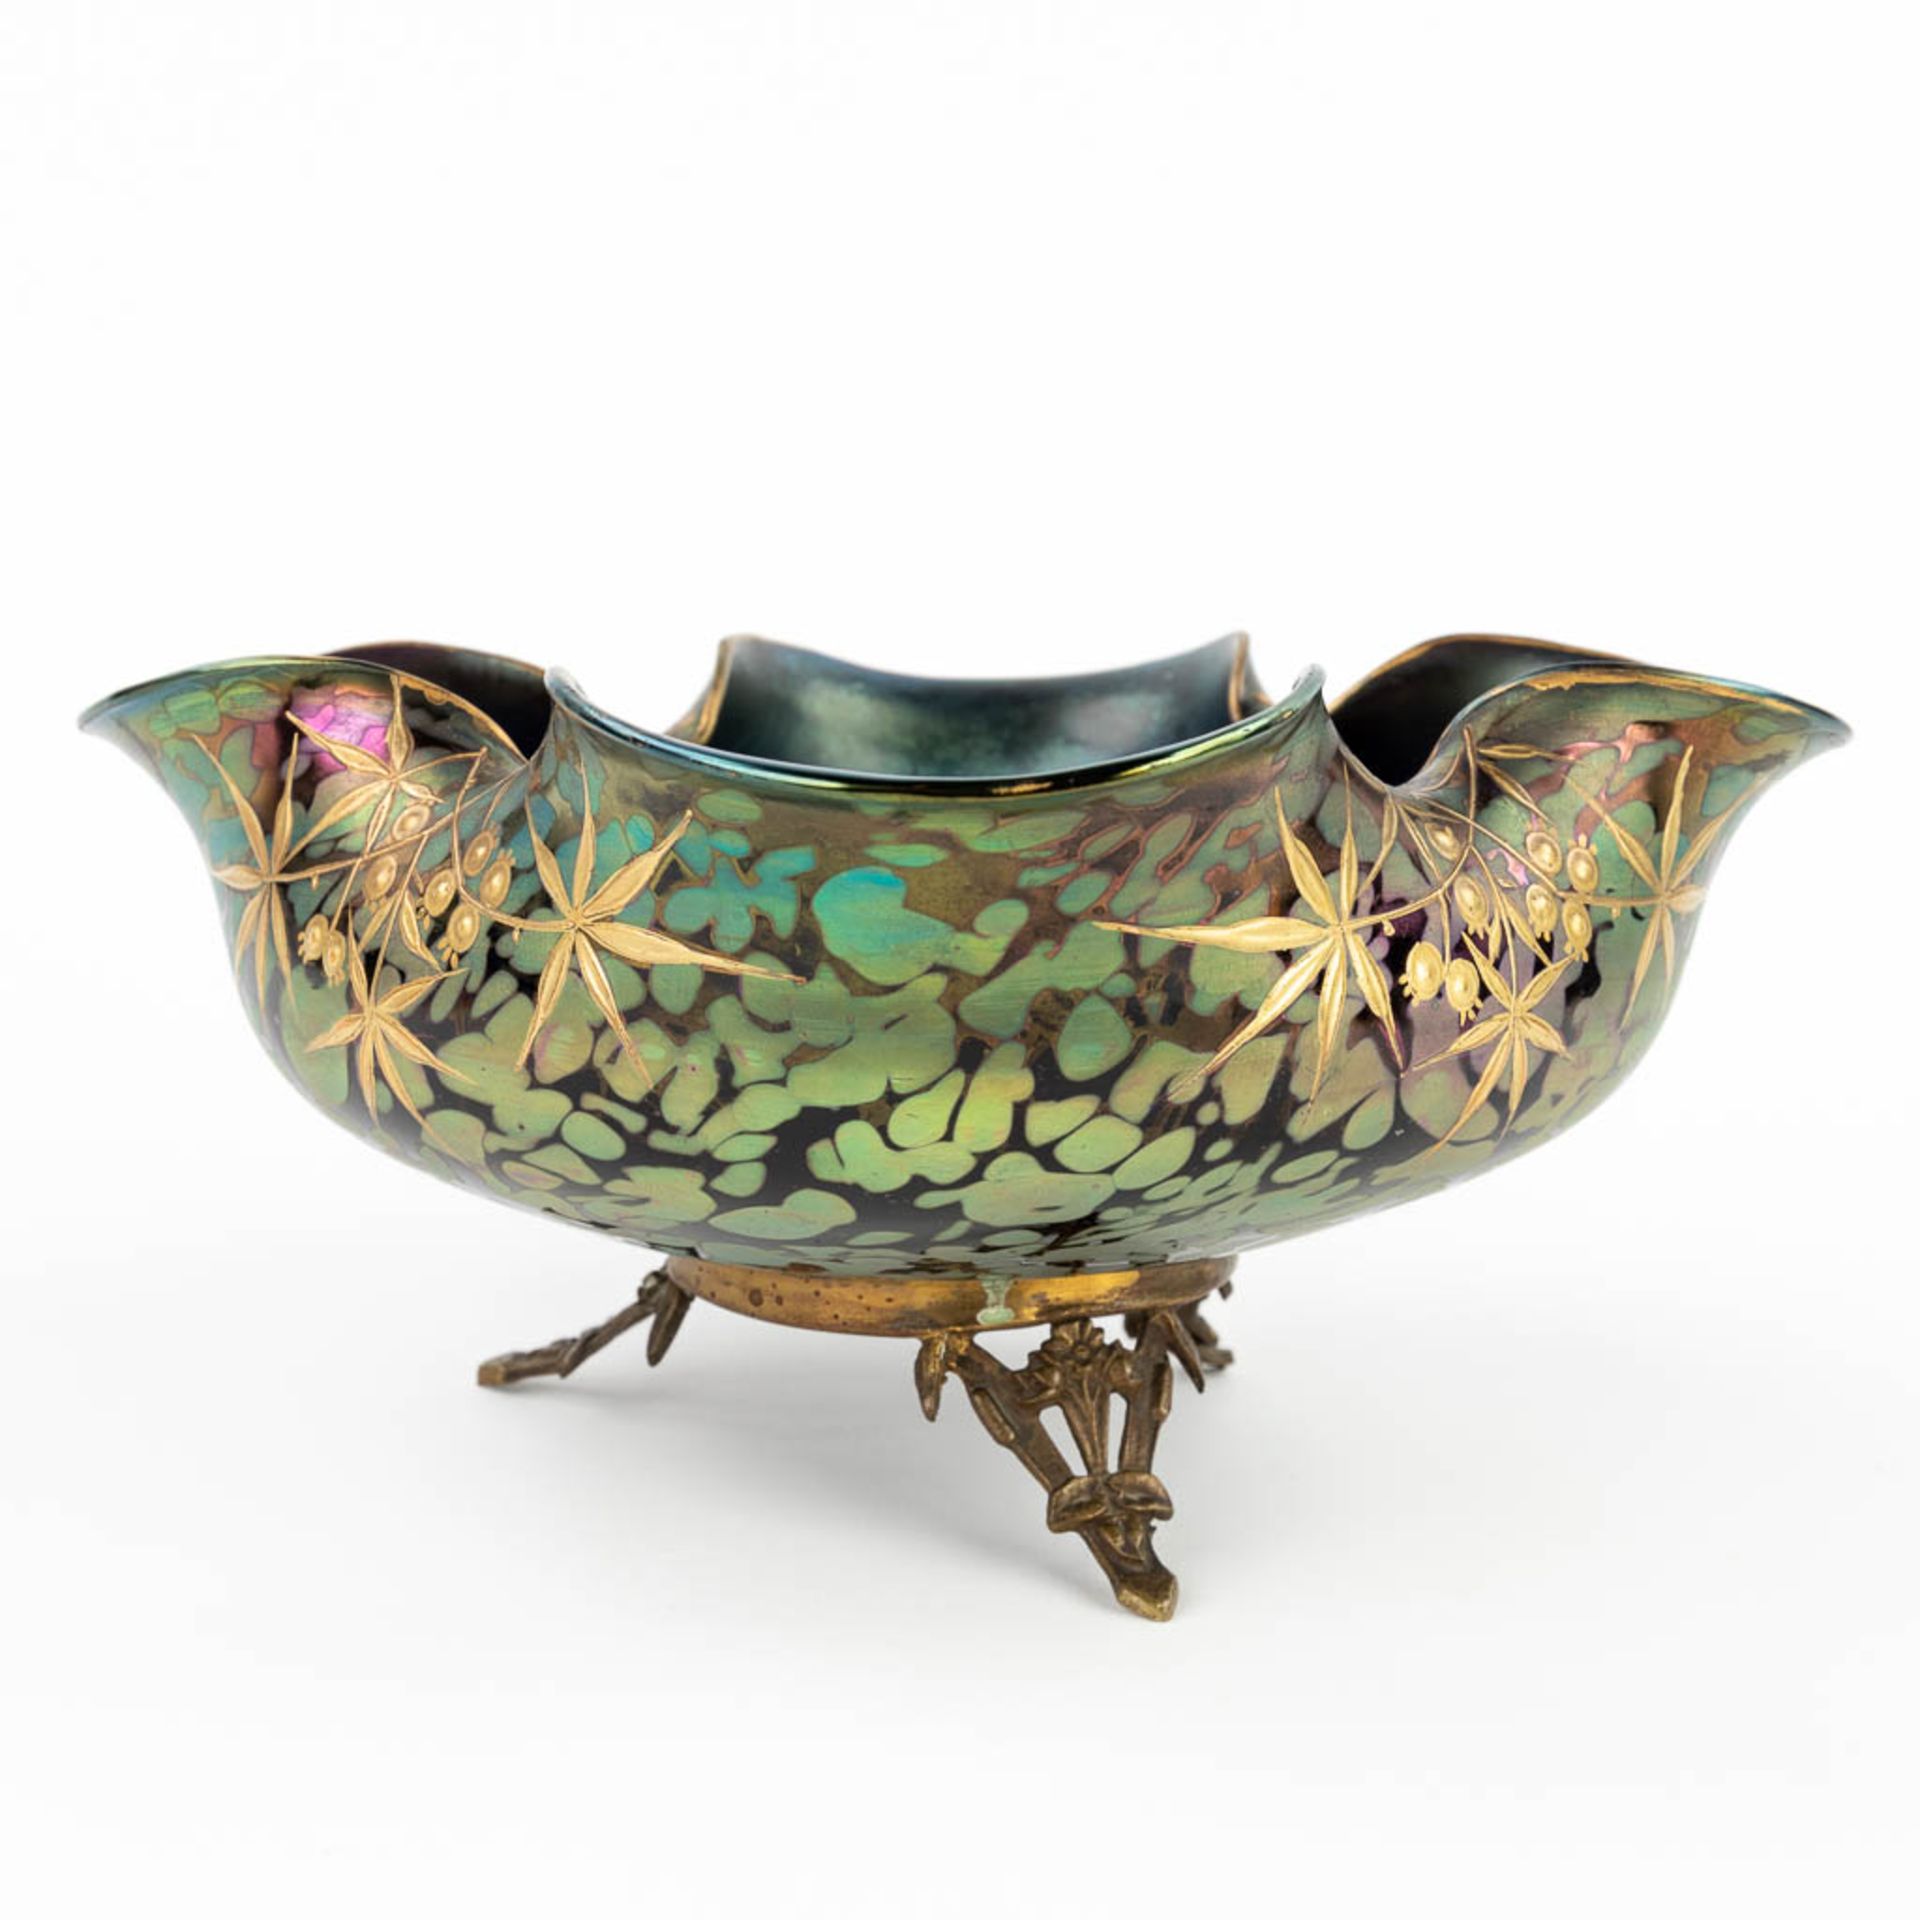 A Pâte-de-Verre glass bowl on a bronze base, Art Nouveau. (H: 12 x D: 26,5 cm) - Image 4 of 11